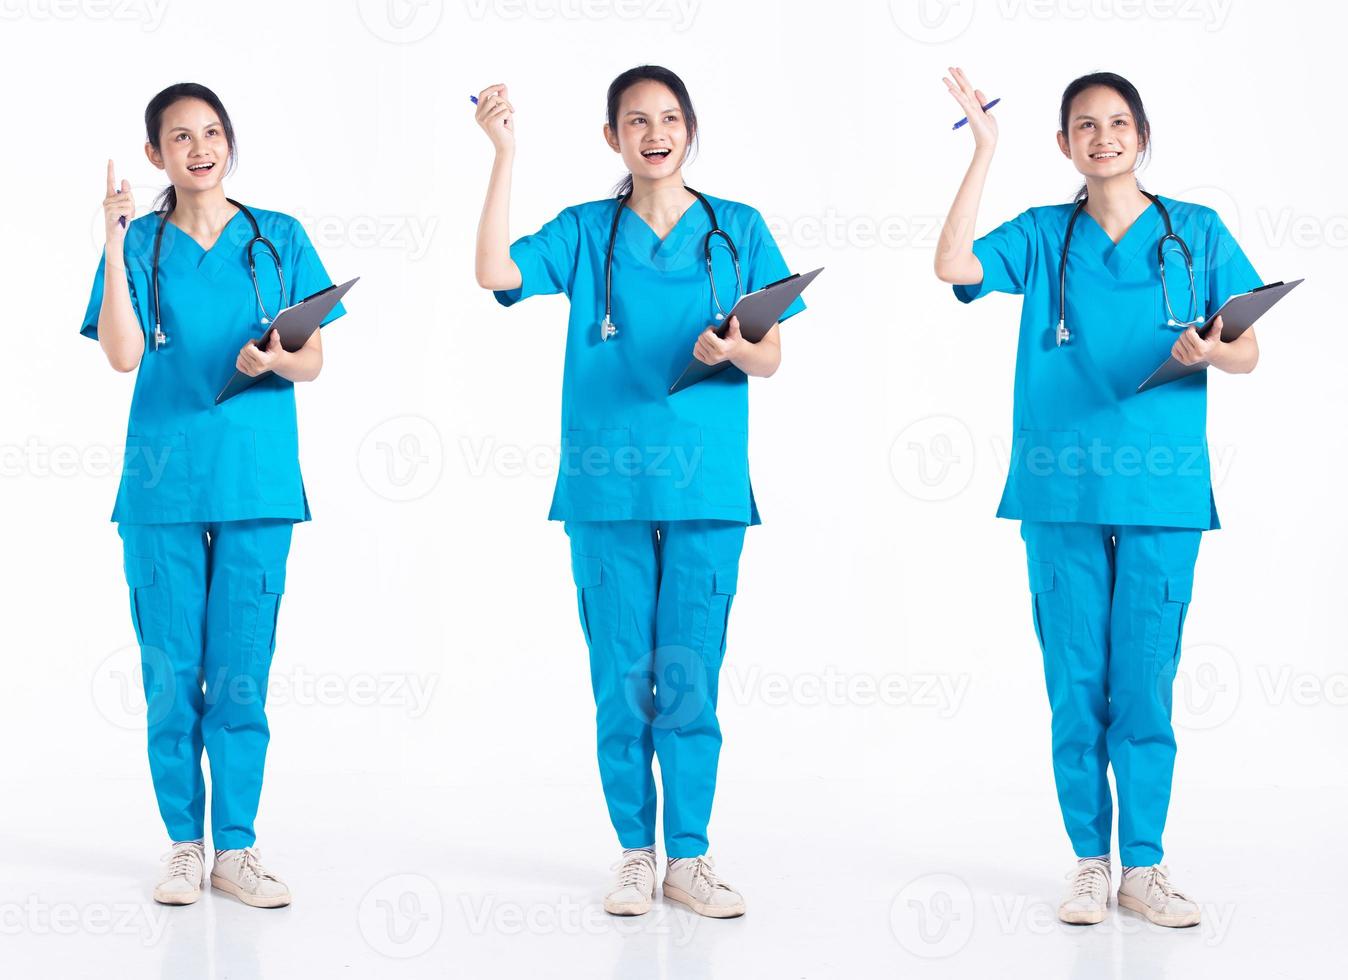 vol lengte Jaren 20 jong mengen ras ziekenhuis verpleegster vrouw, richten vinger Wauw idee, slijtage stethoscoop blauw uniform. dokter vrouw voelt glimlach gelukkig over- wit achtergrond geïsoleerd foto